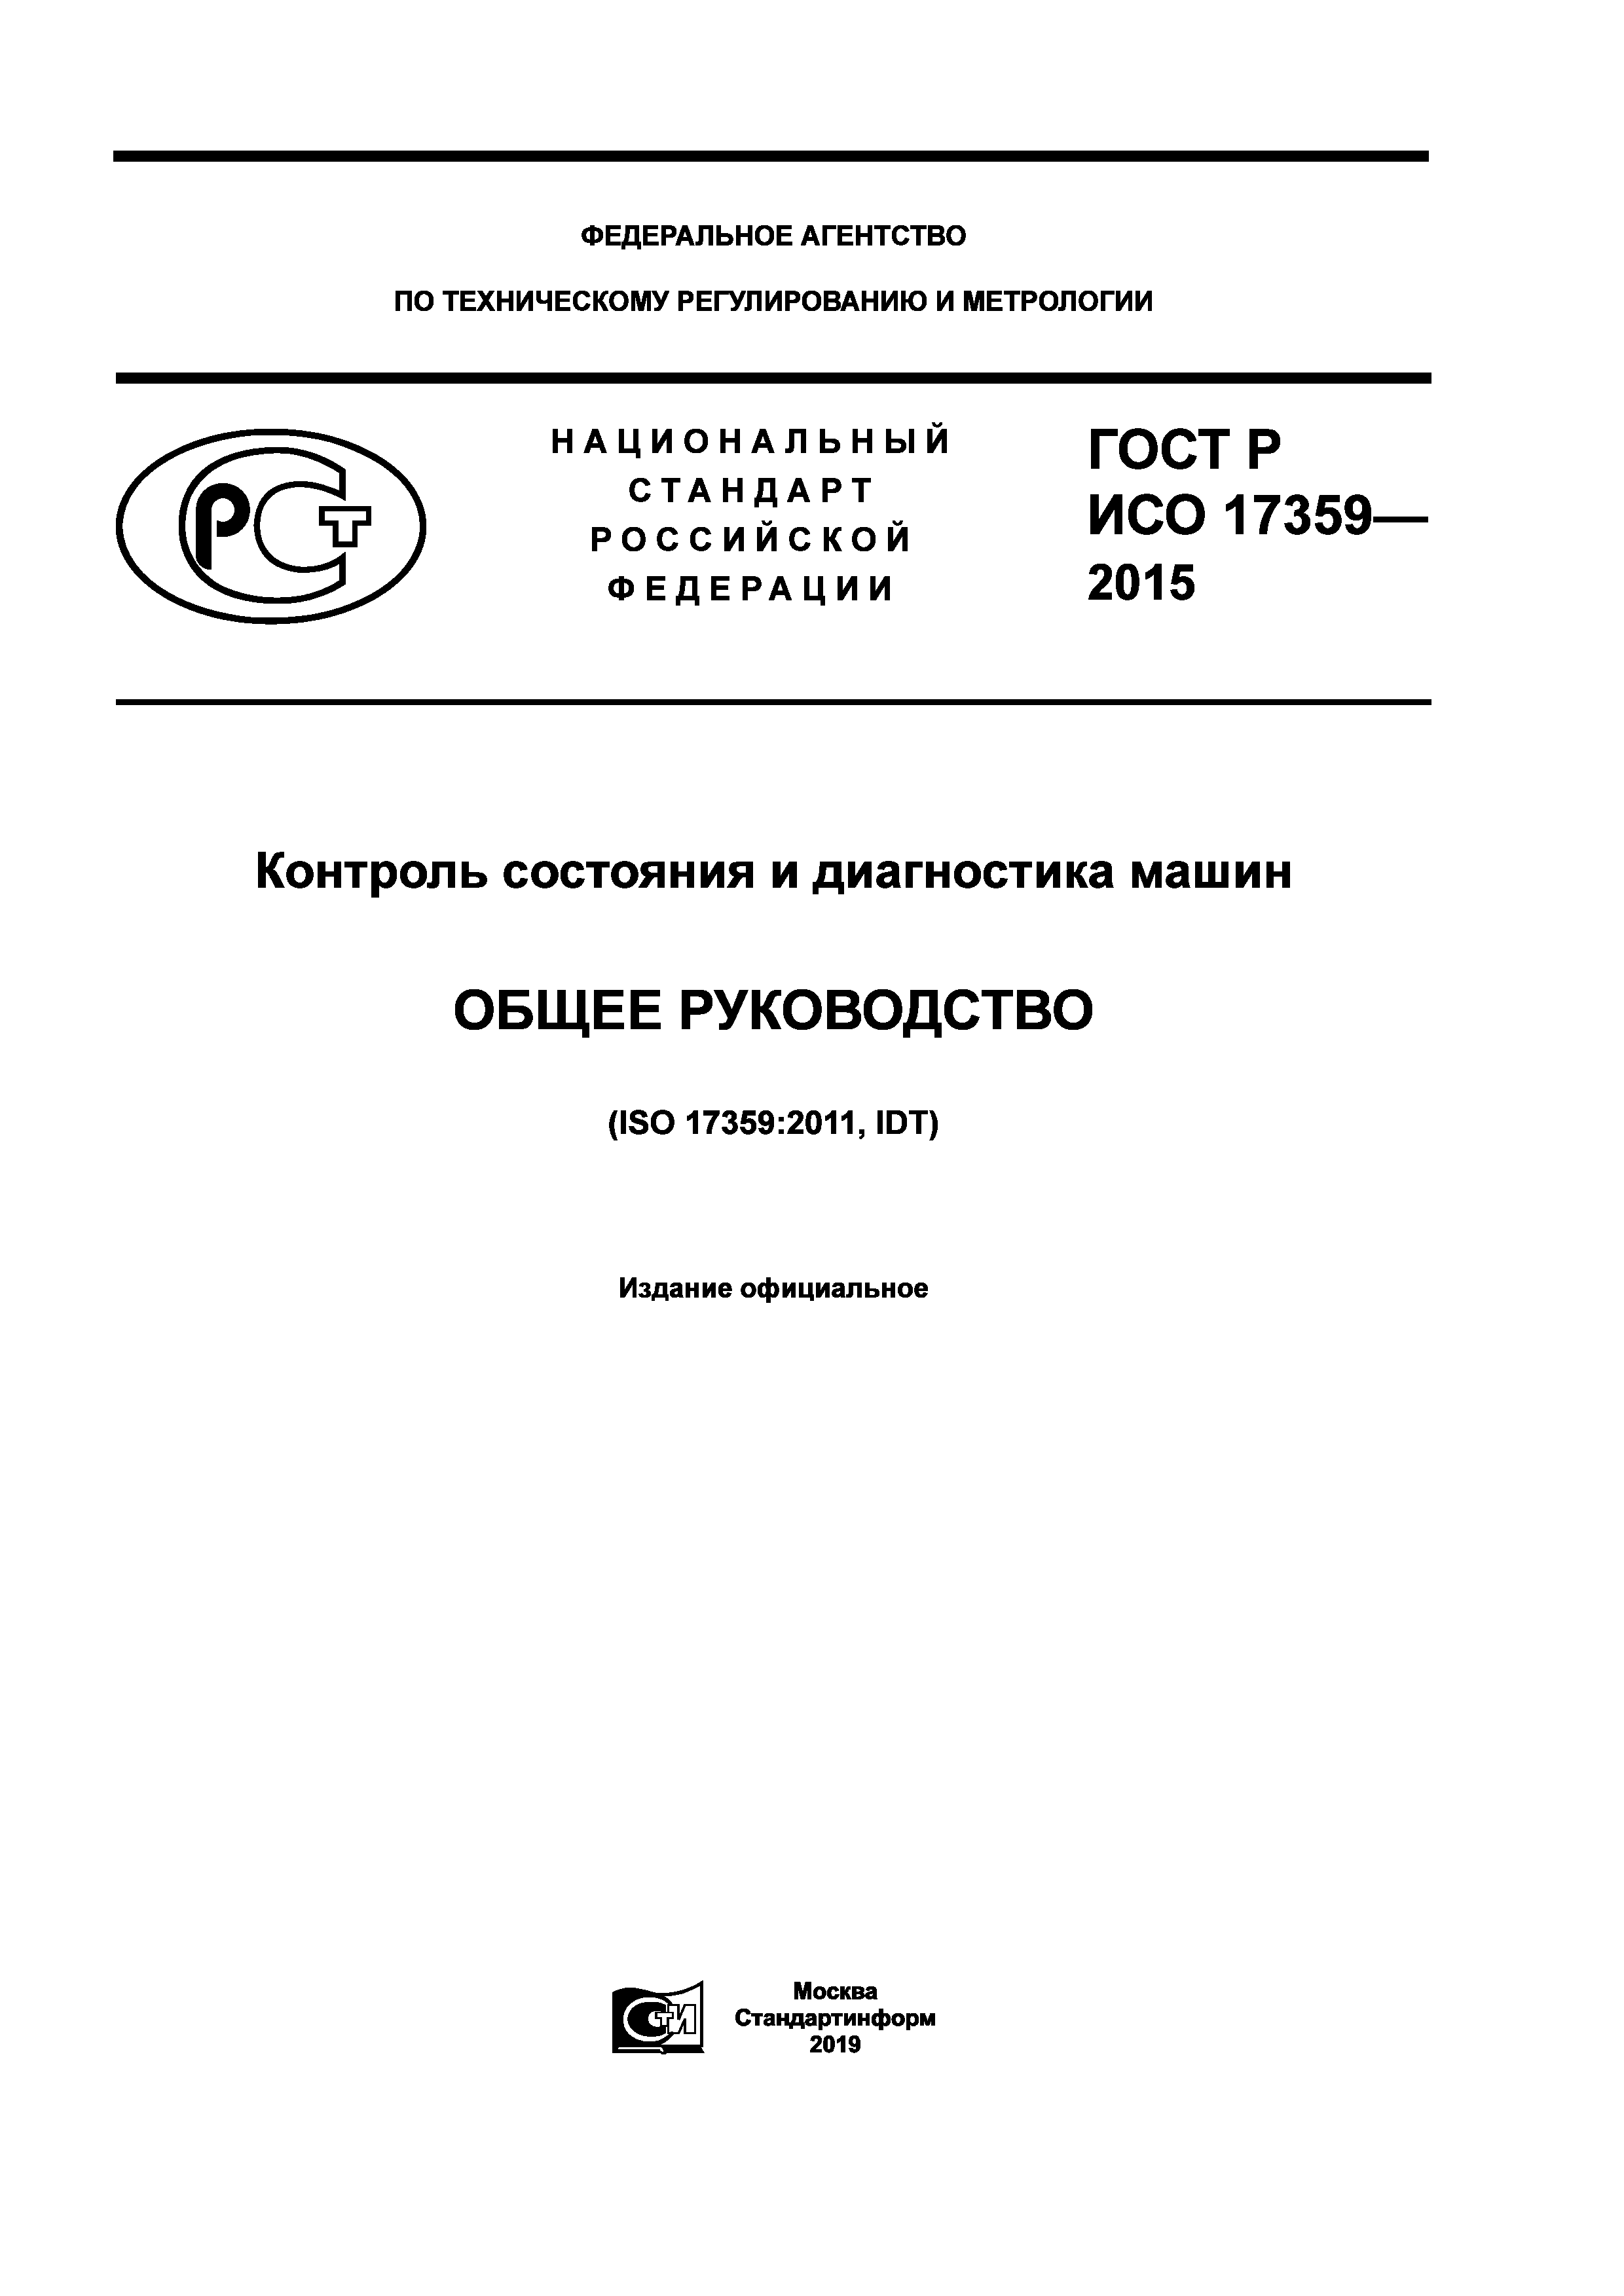 ГОСТ Р ИСО 17359-2015